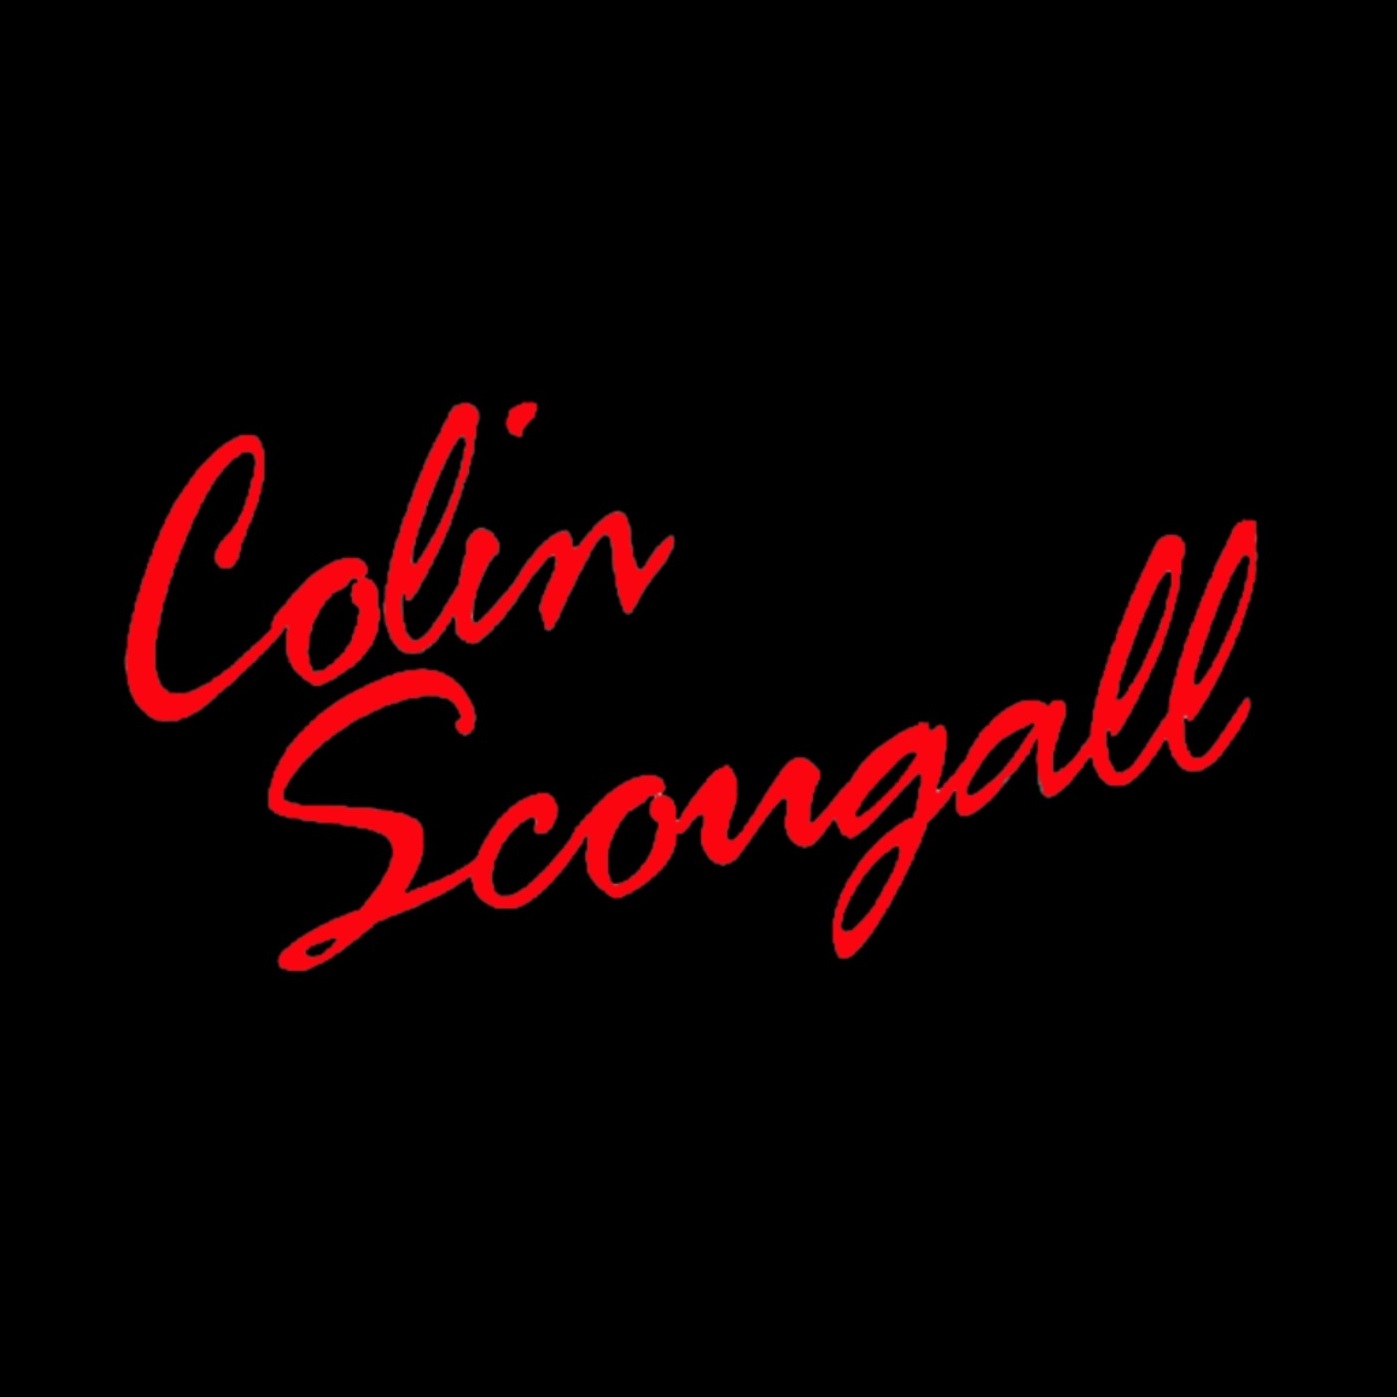 Colin Scougall